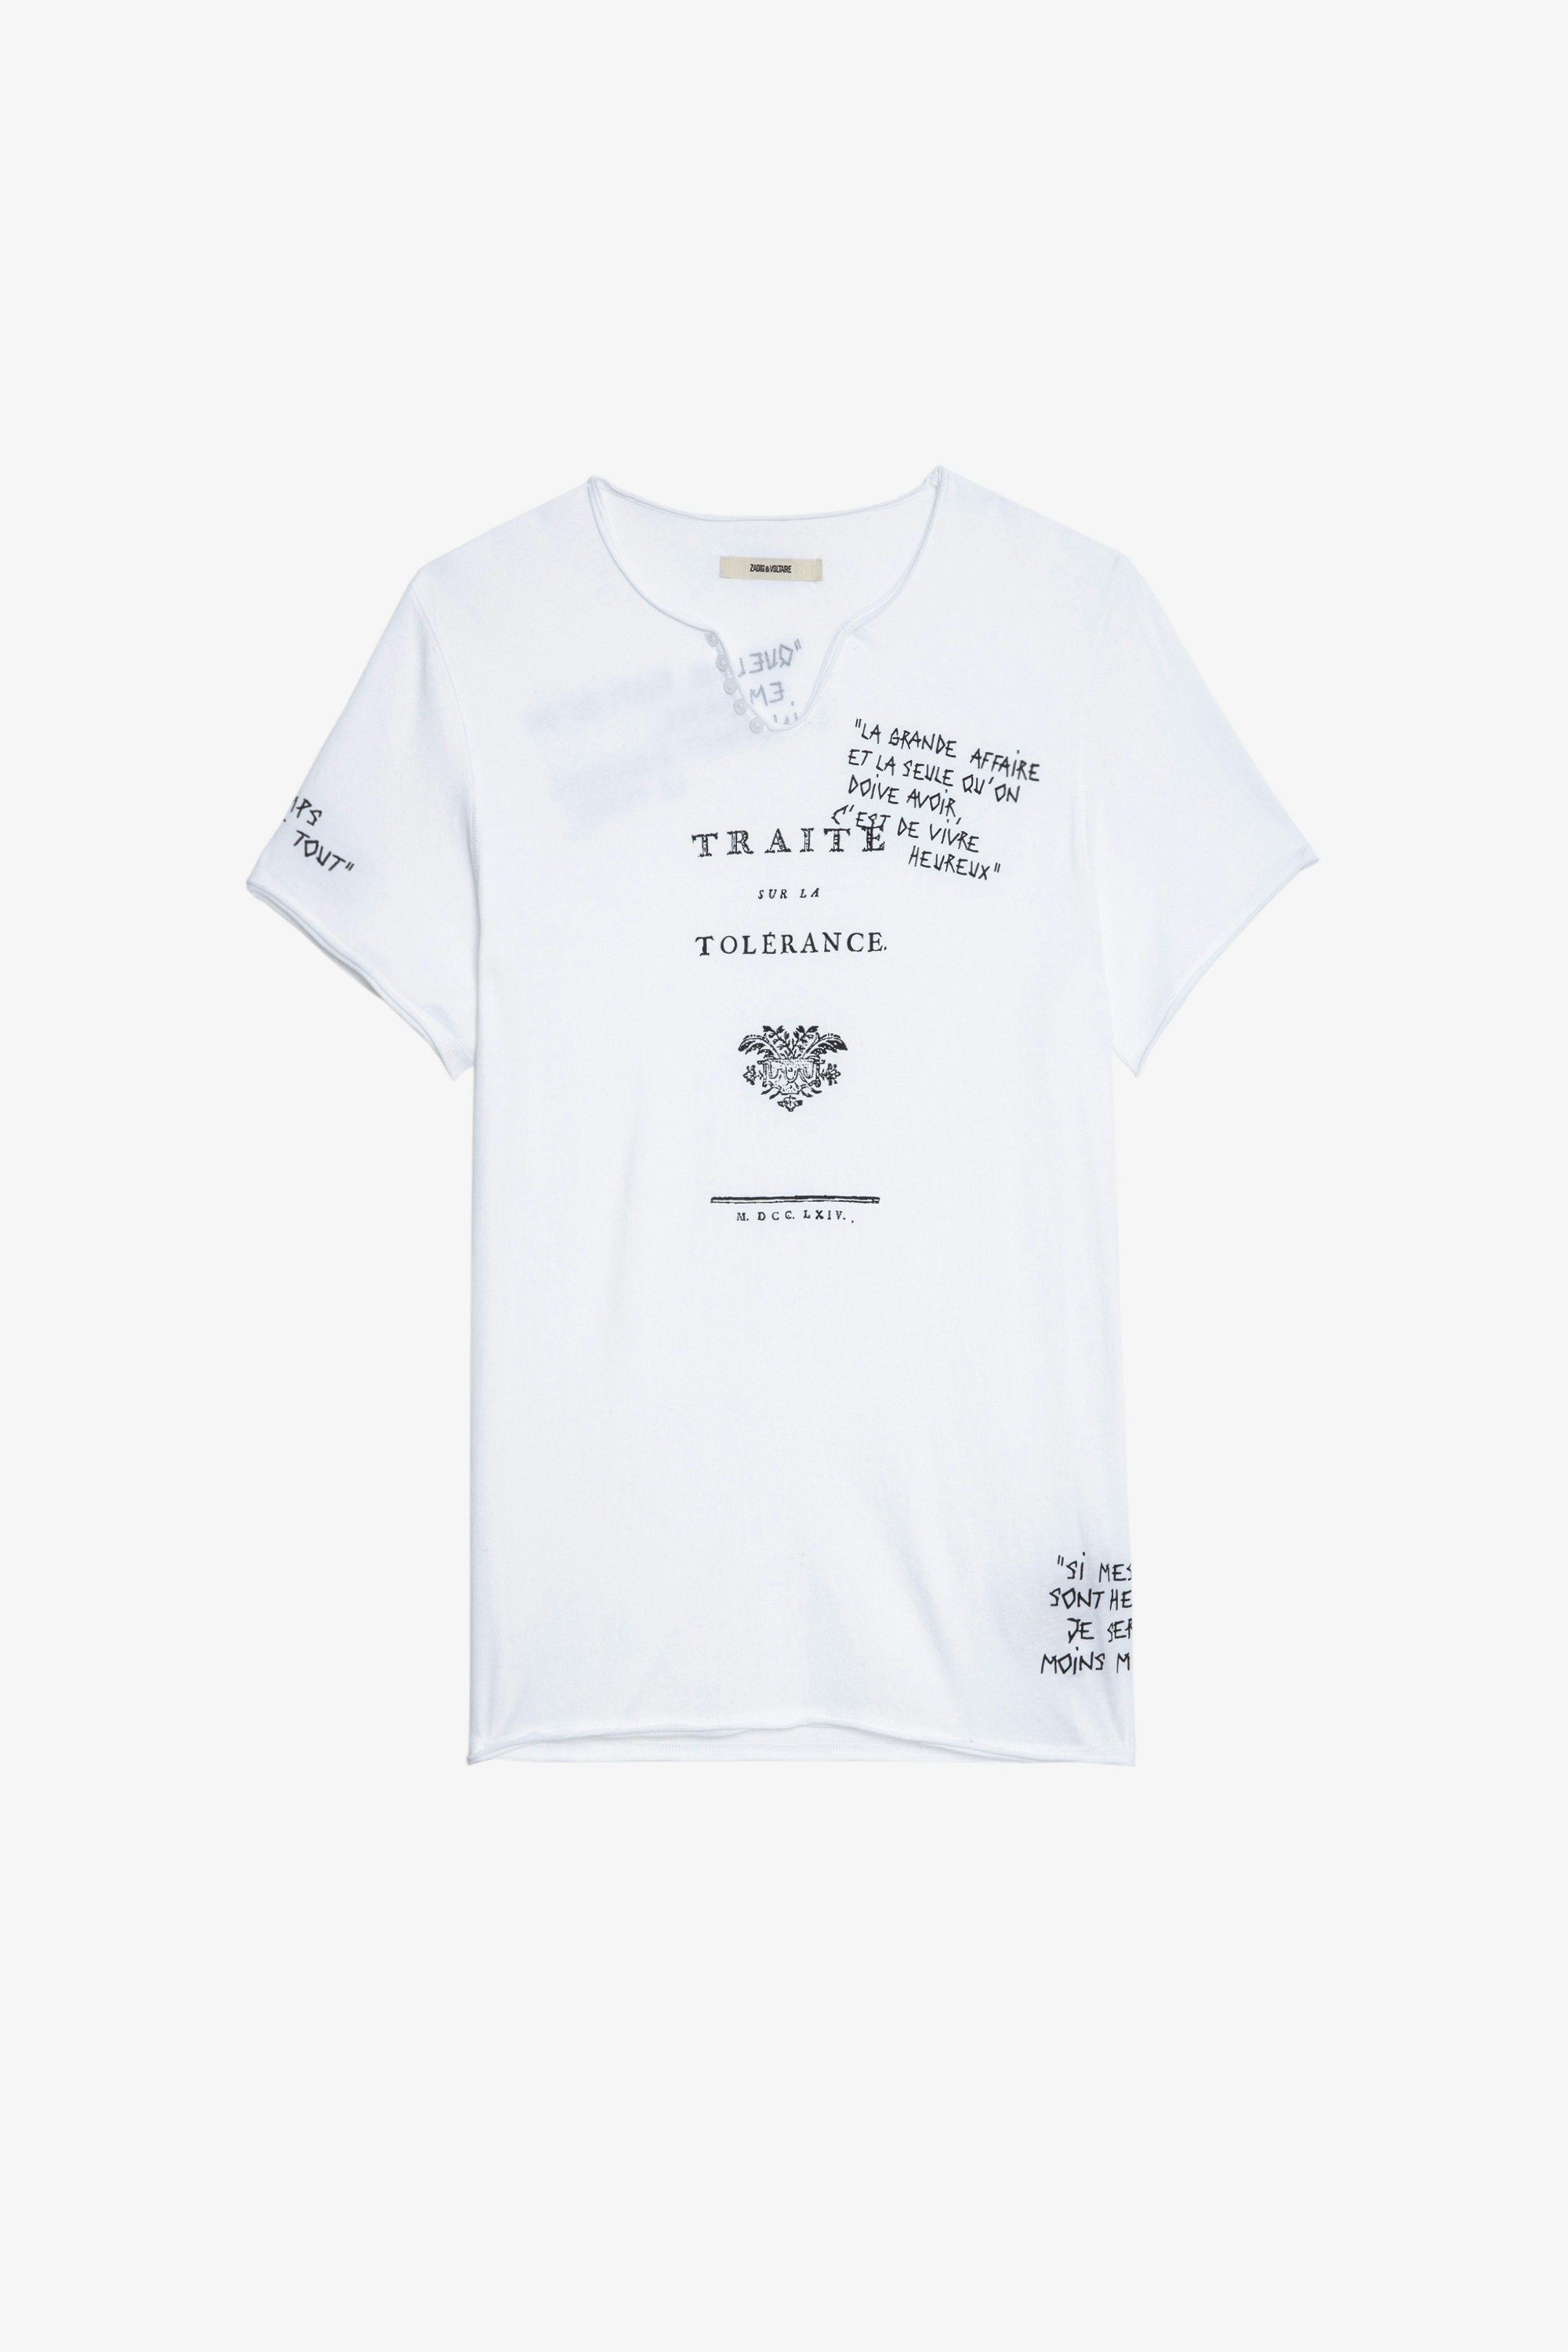 T-shirt Monastir T-shirt tunisien en coton blanc à manches courtes et orné de citations Traité de la Tolérance homme